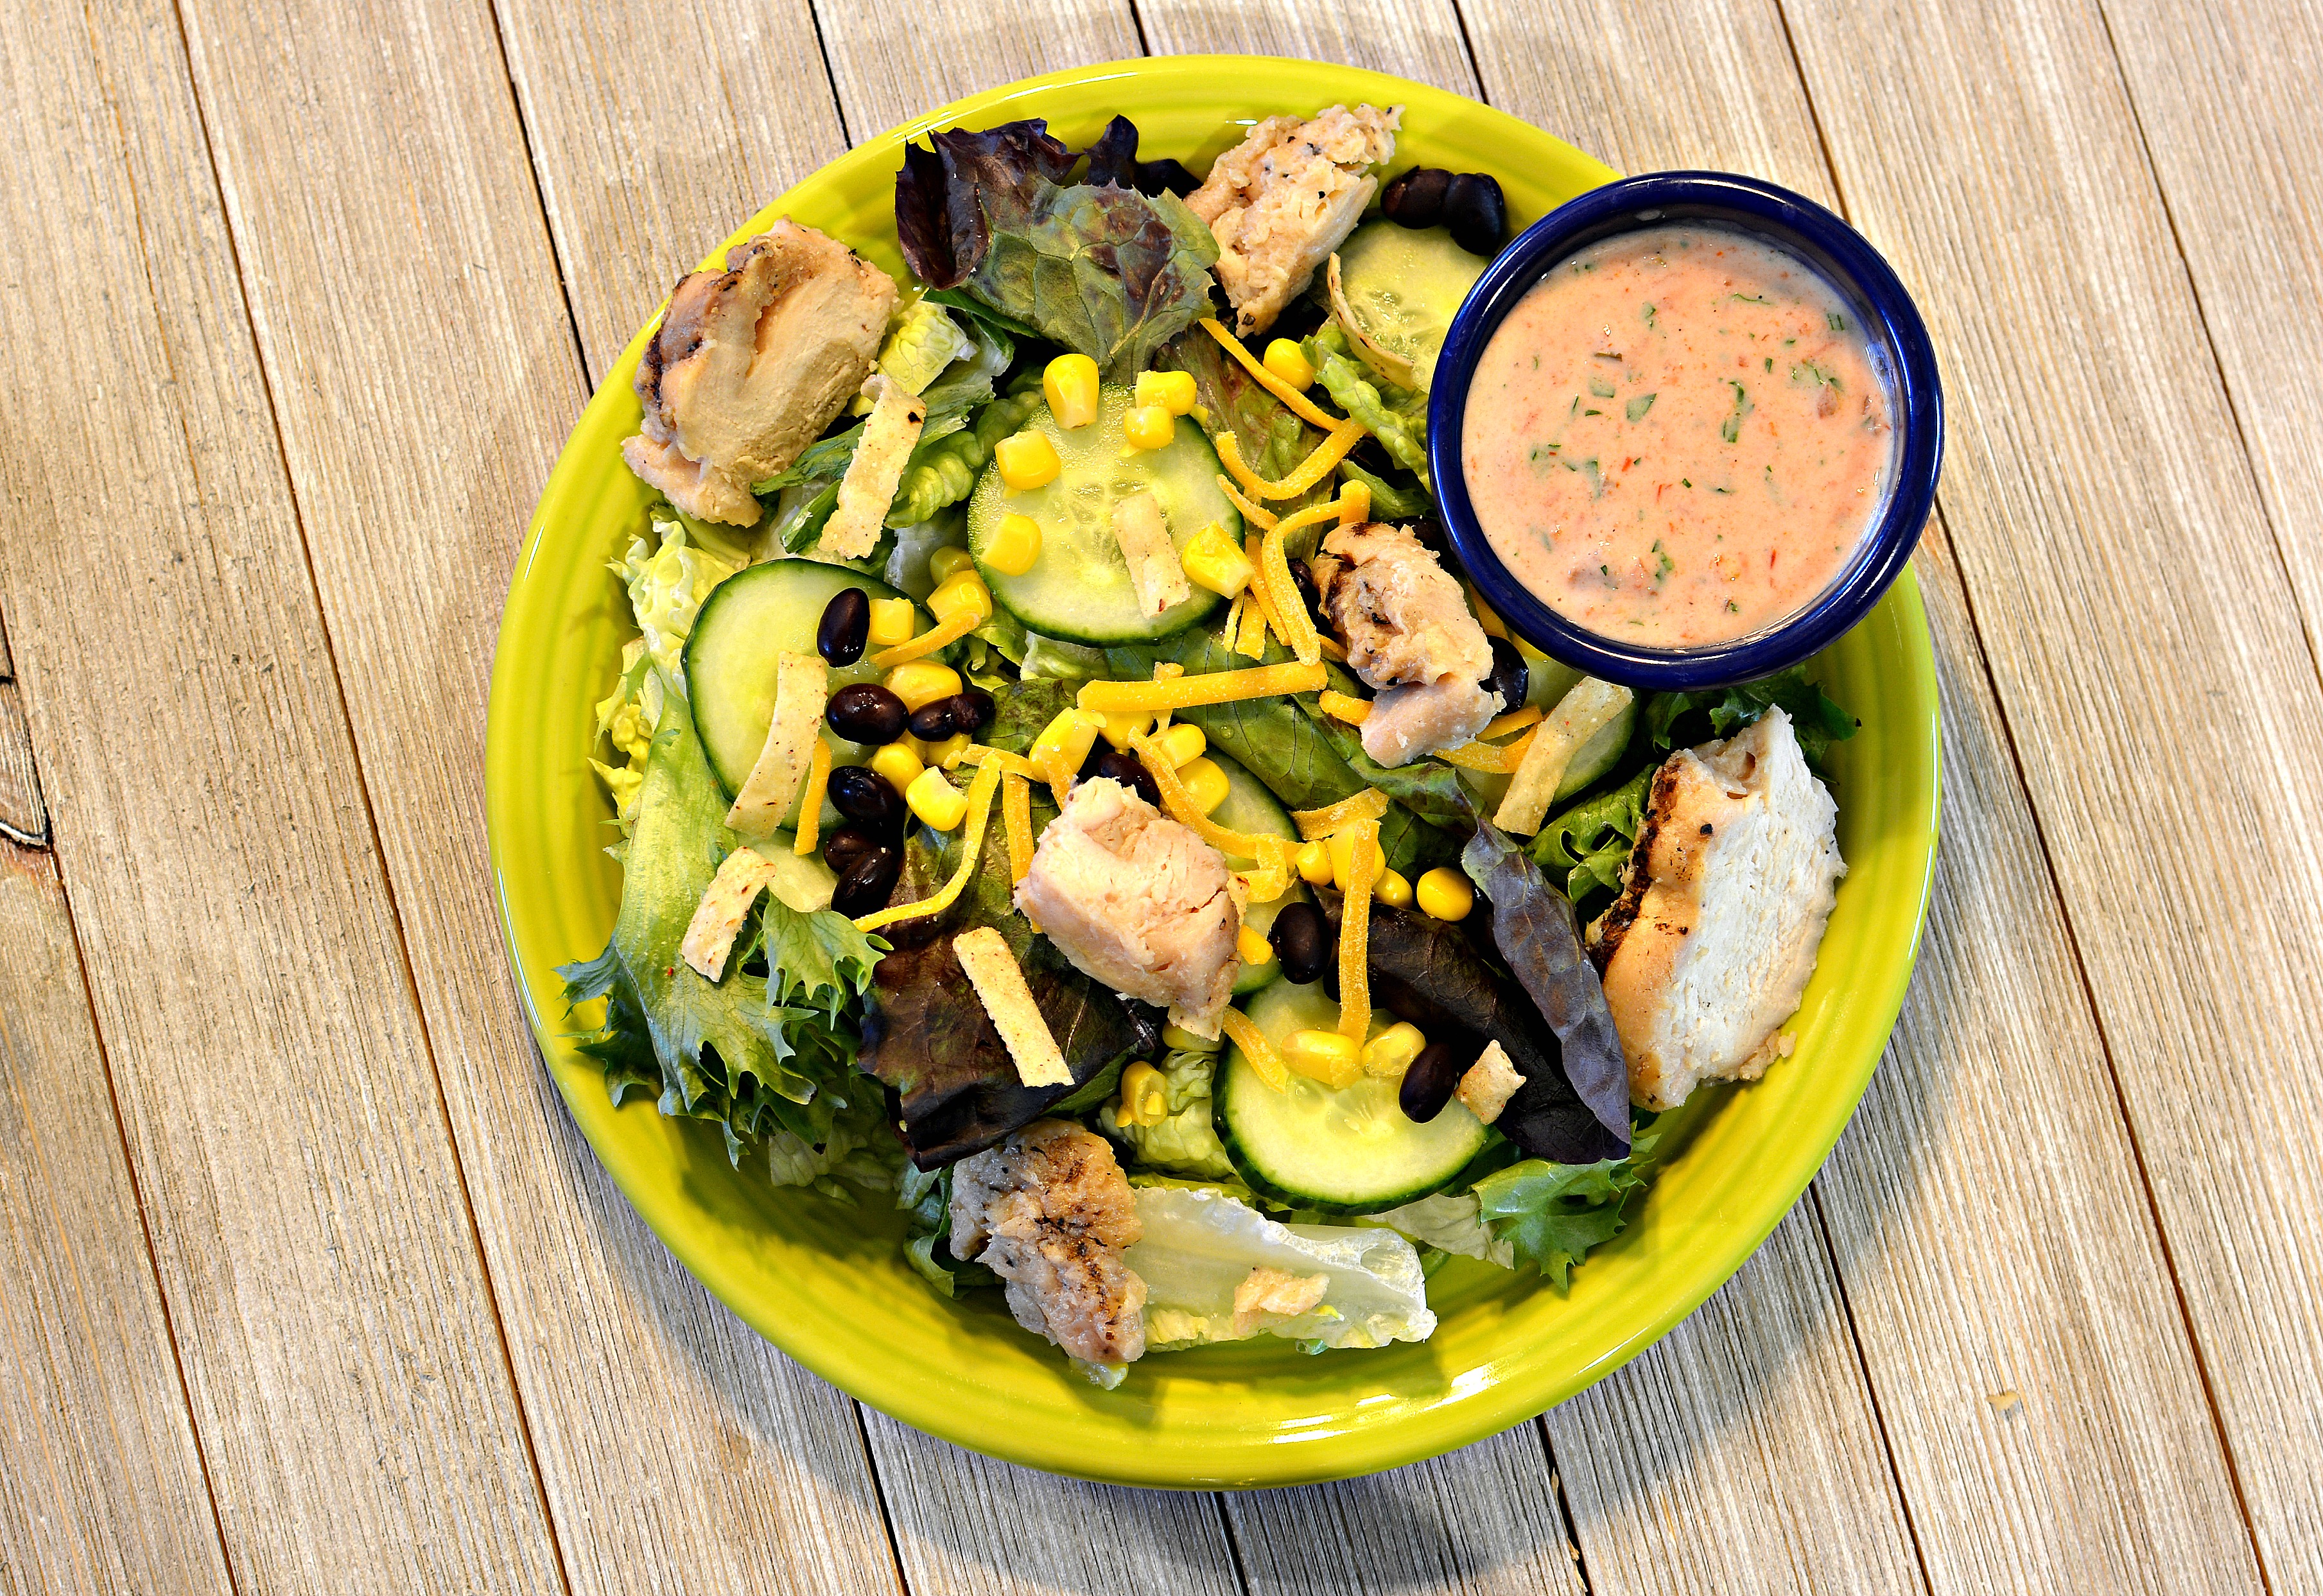 Fiesta Grilled Chicken Salad